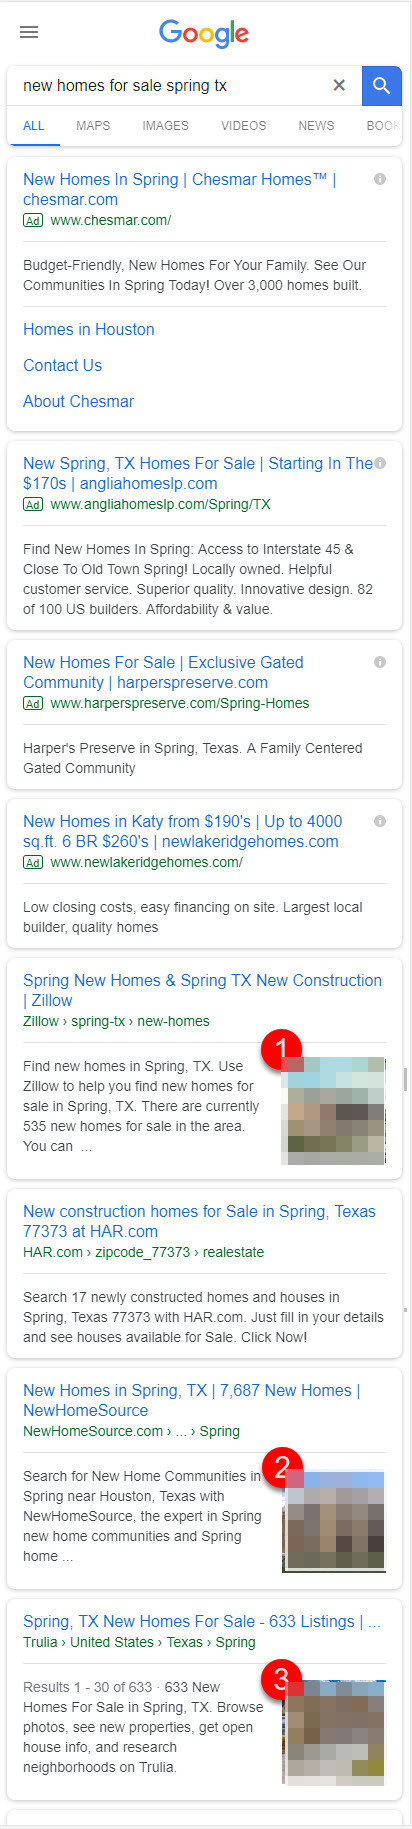 Google: Thumbnails in der mobilen Suche (Beispiel)